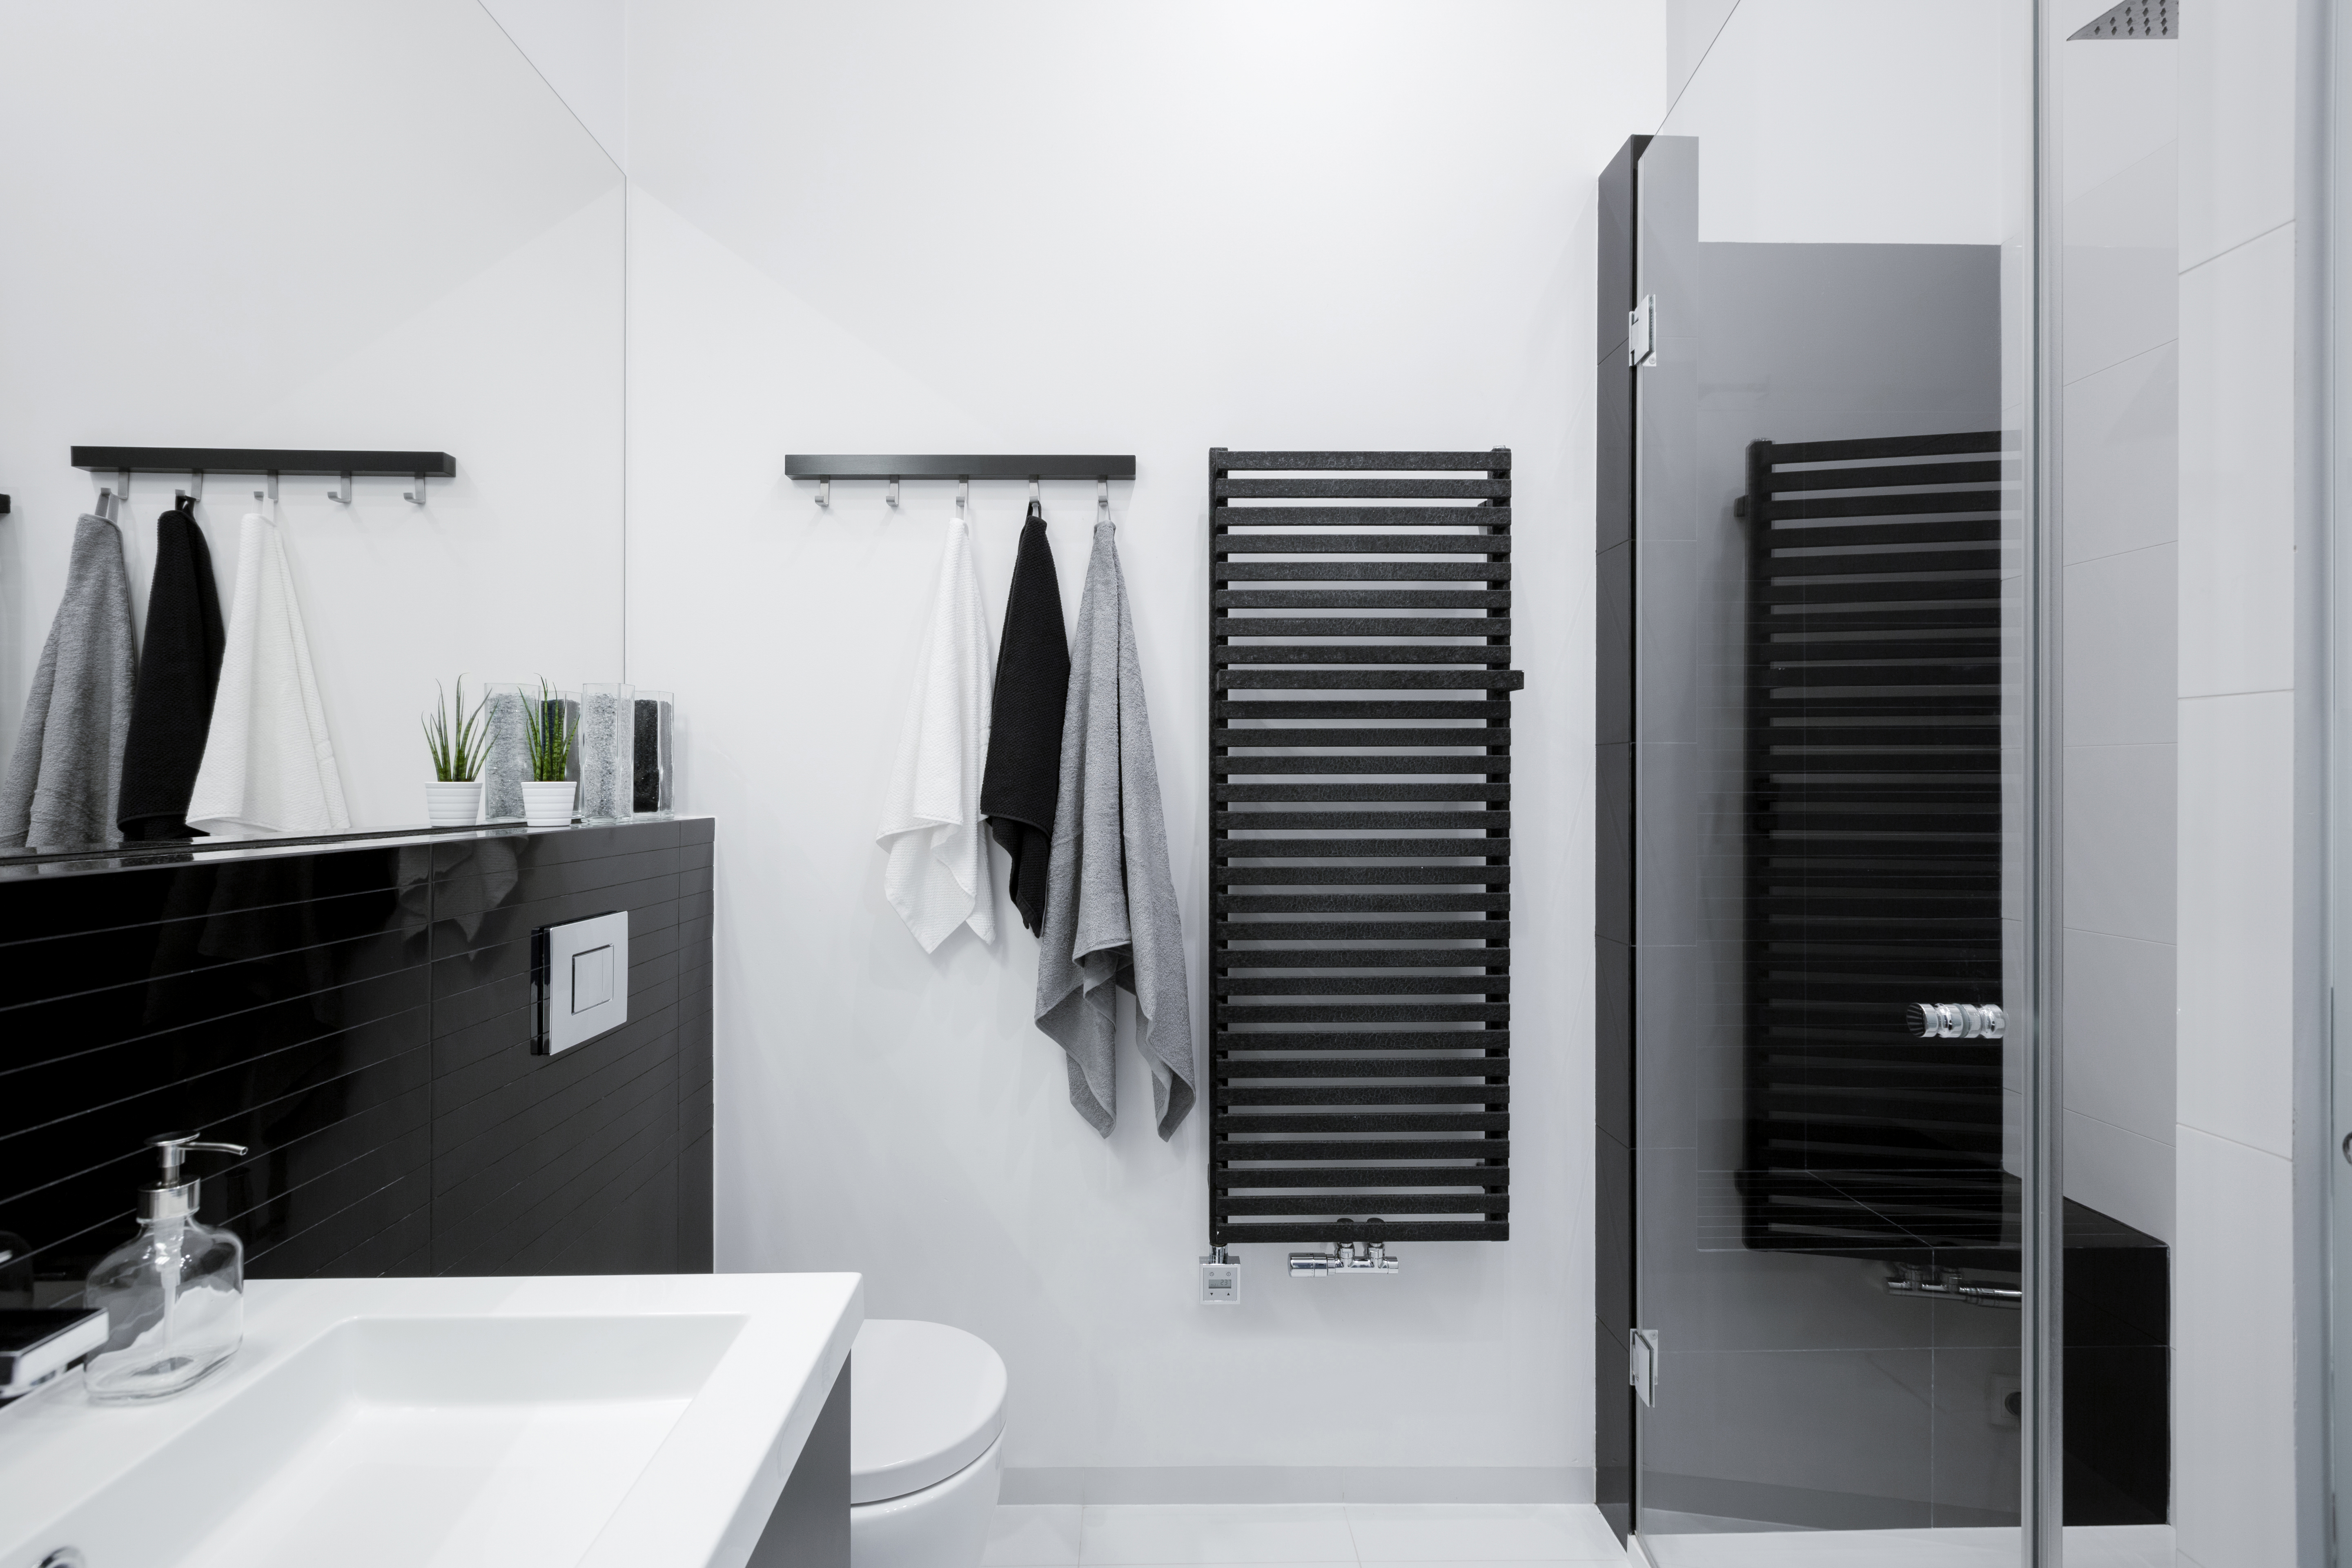 Schwarz in einem Badezimmer kann deprimierend wirken und sollte durch wärmere Töne wie ein klares Weiß ausgeglichen werden